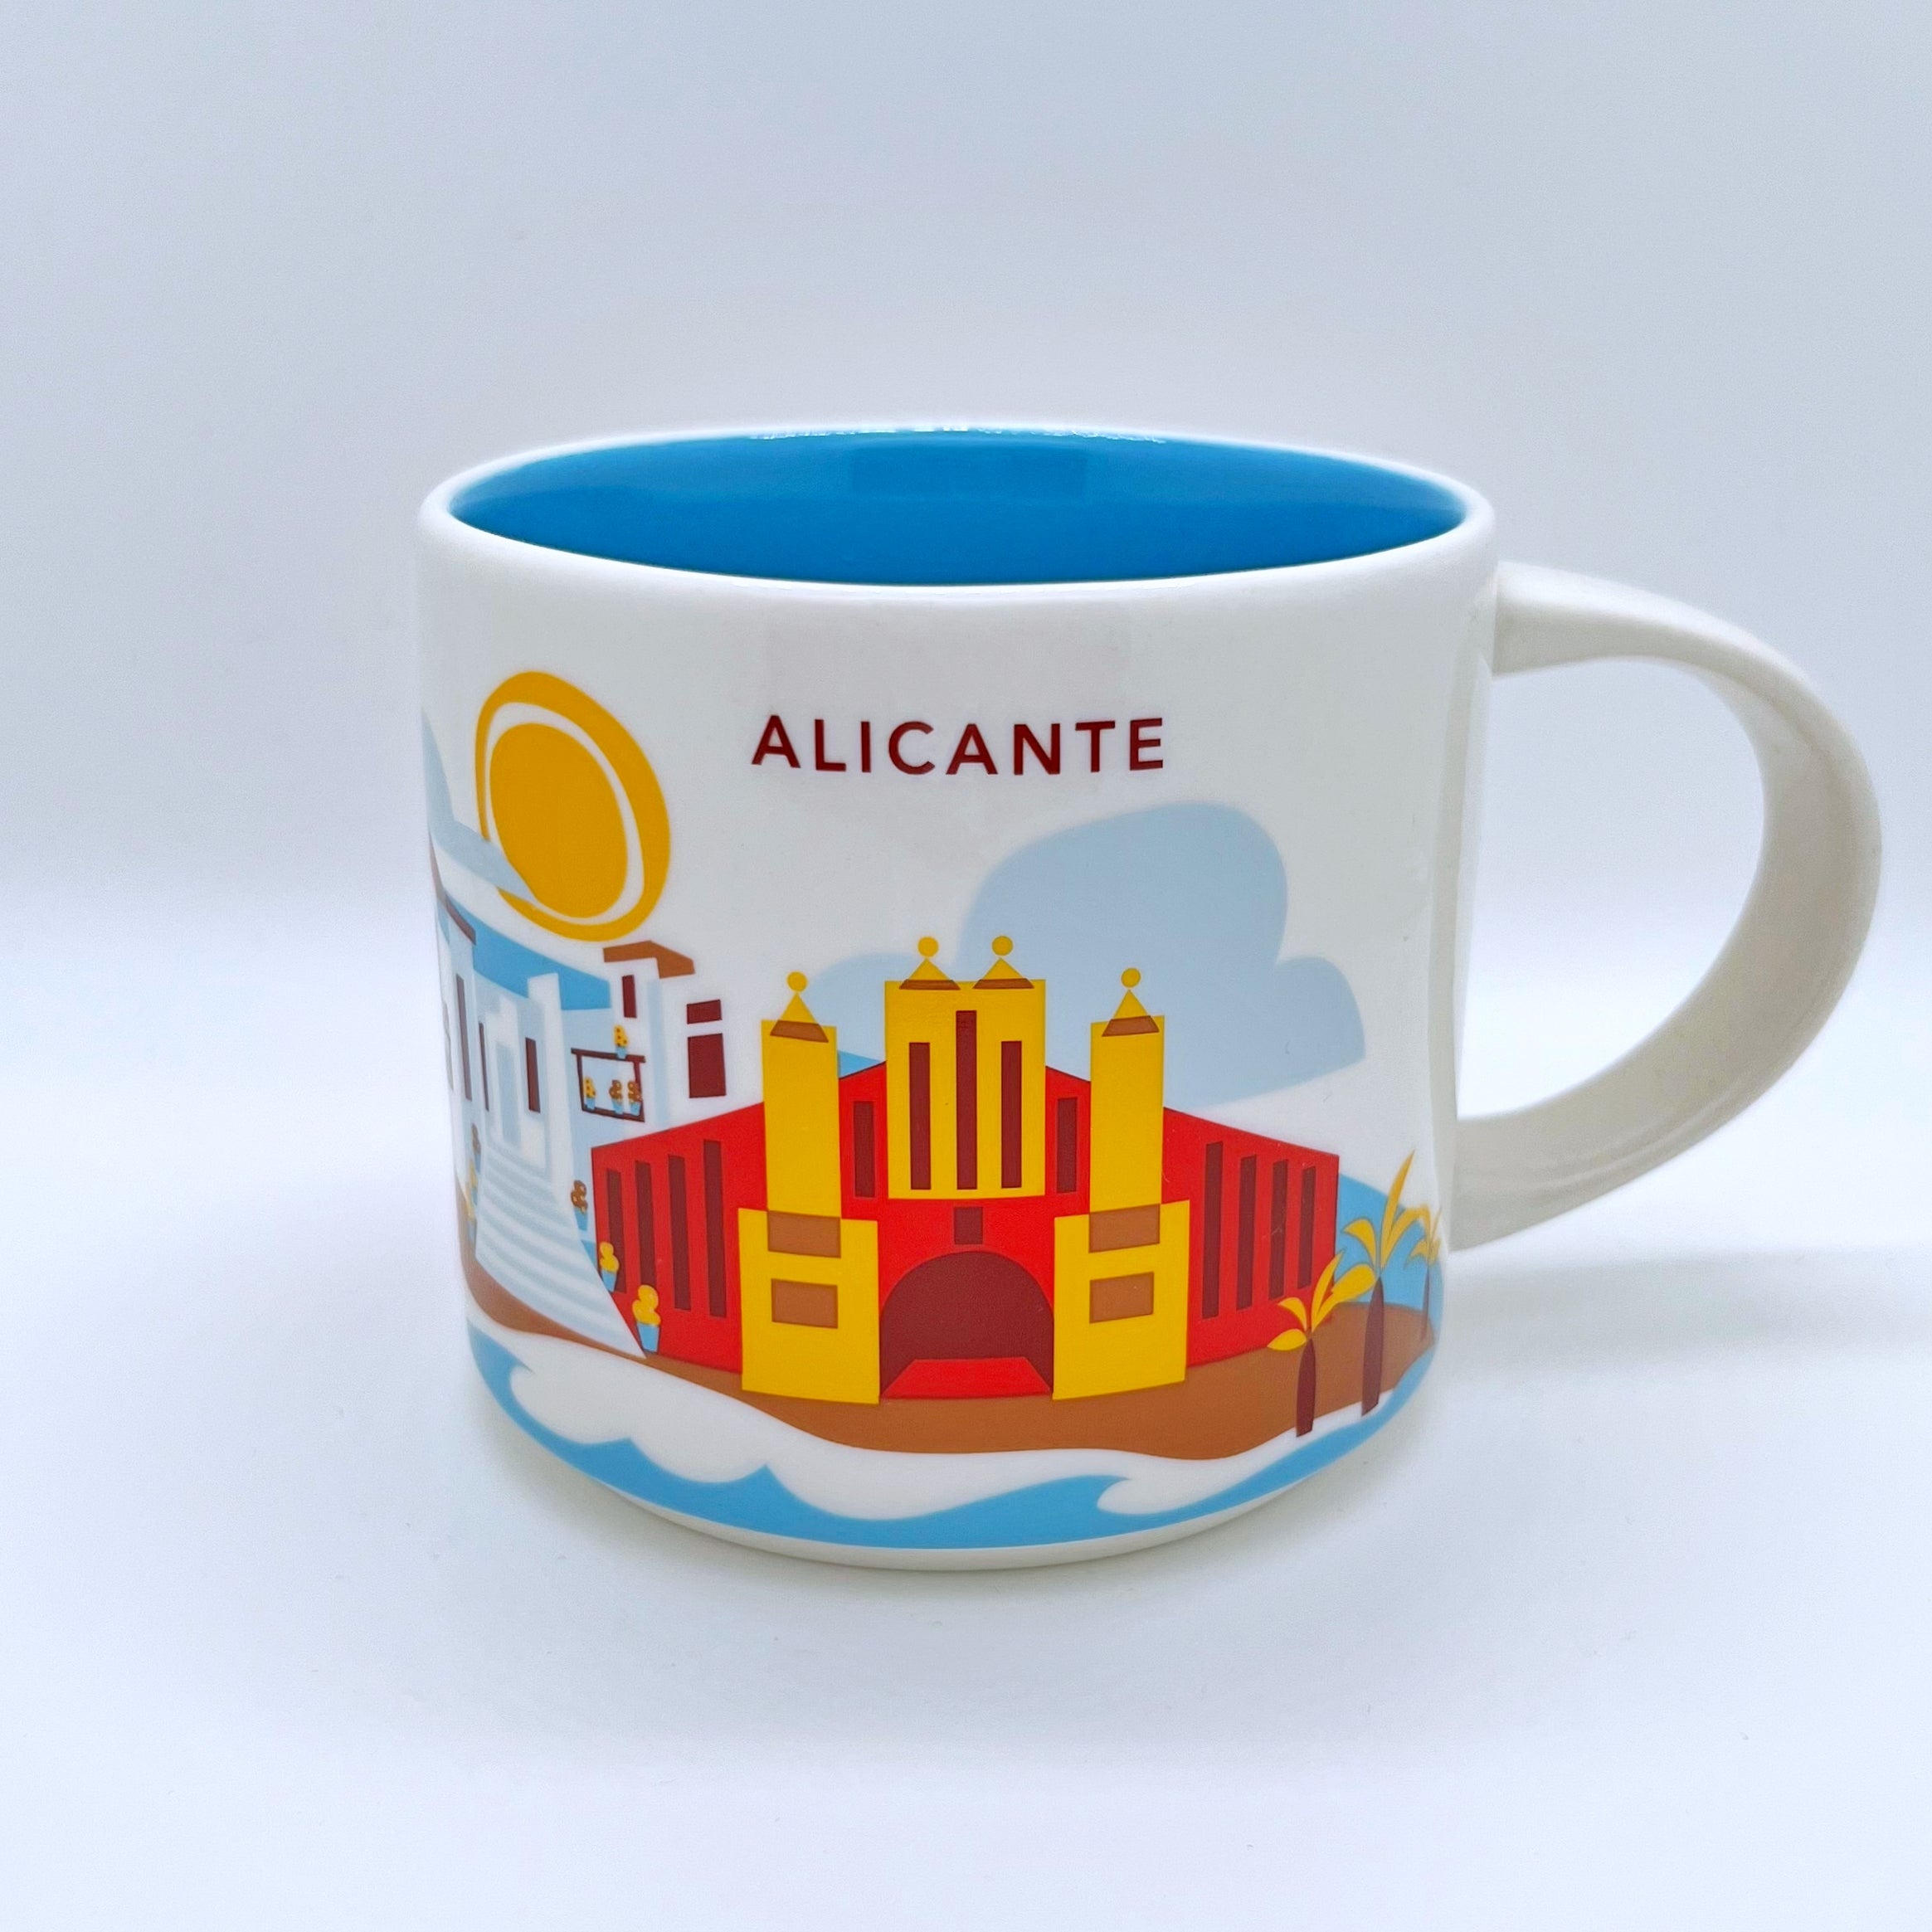 Kaffee Tee und Cappuccino Tasse von Starbucks mit gemalten Bildern aus der Stadt Alicante